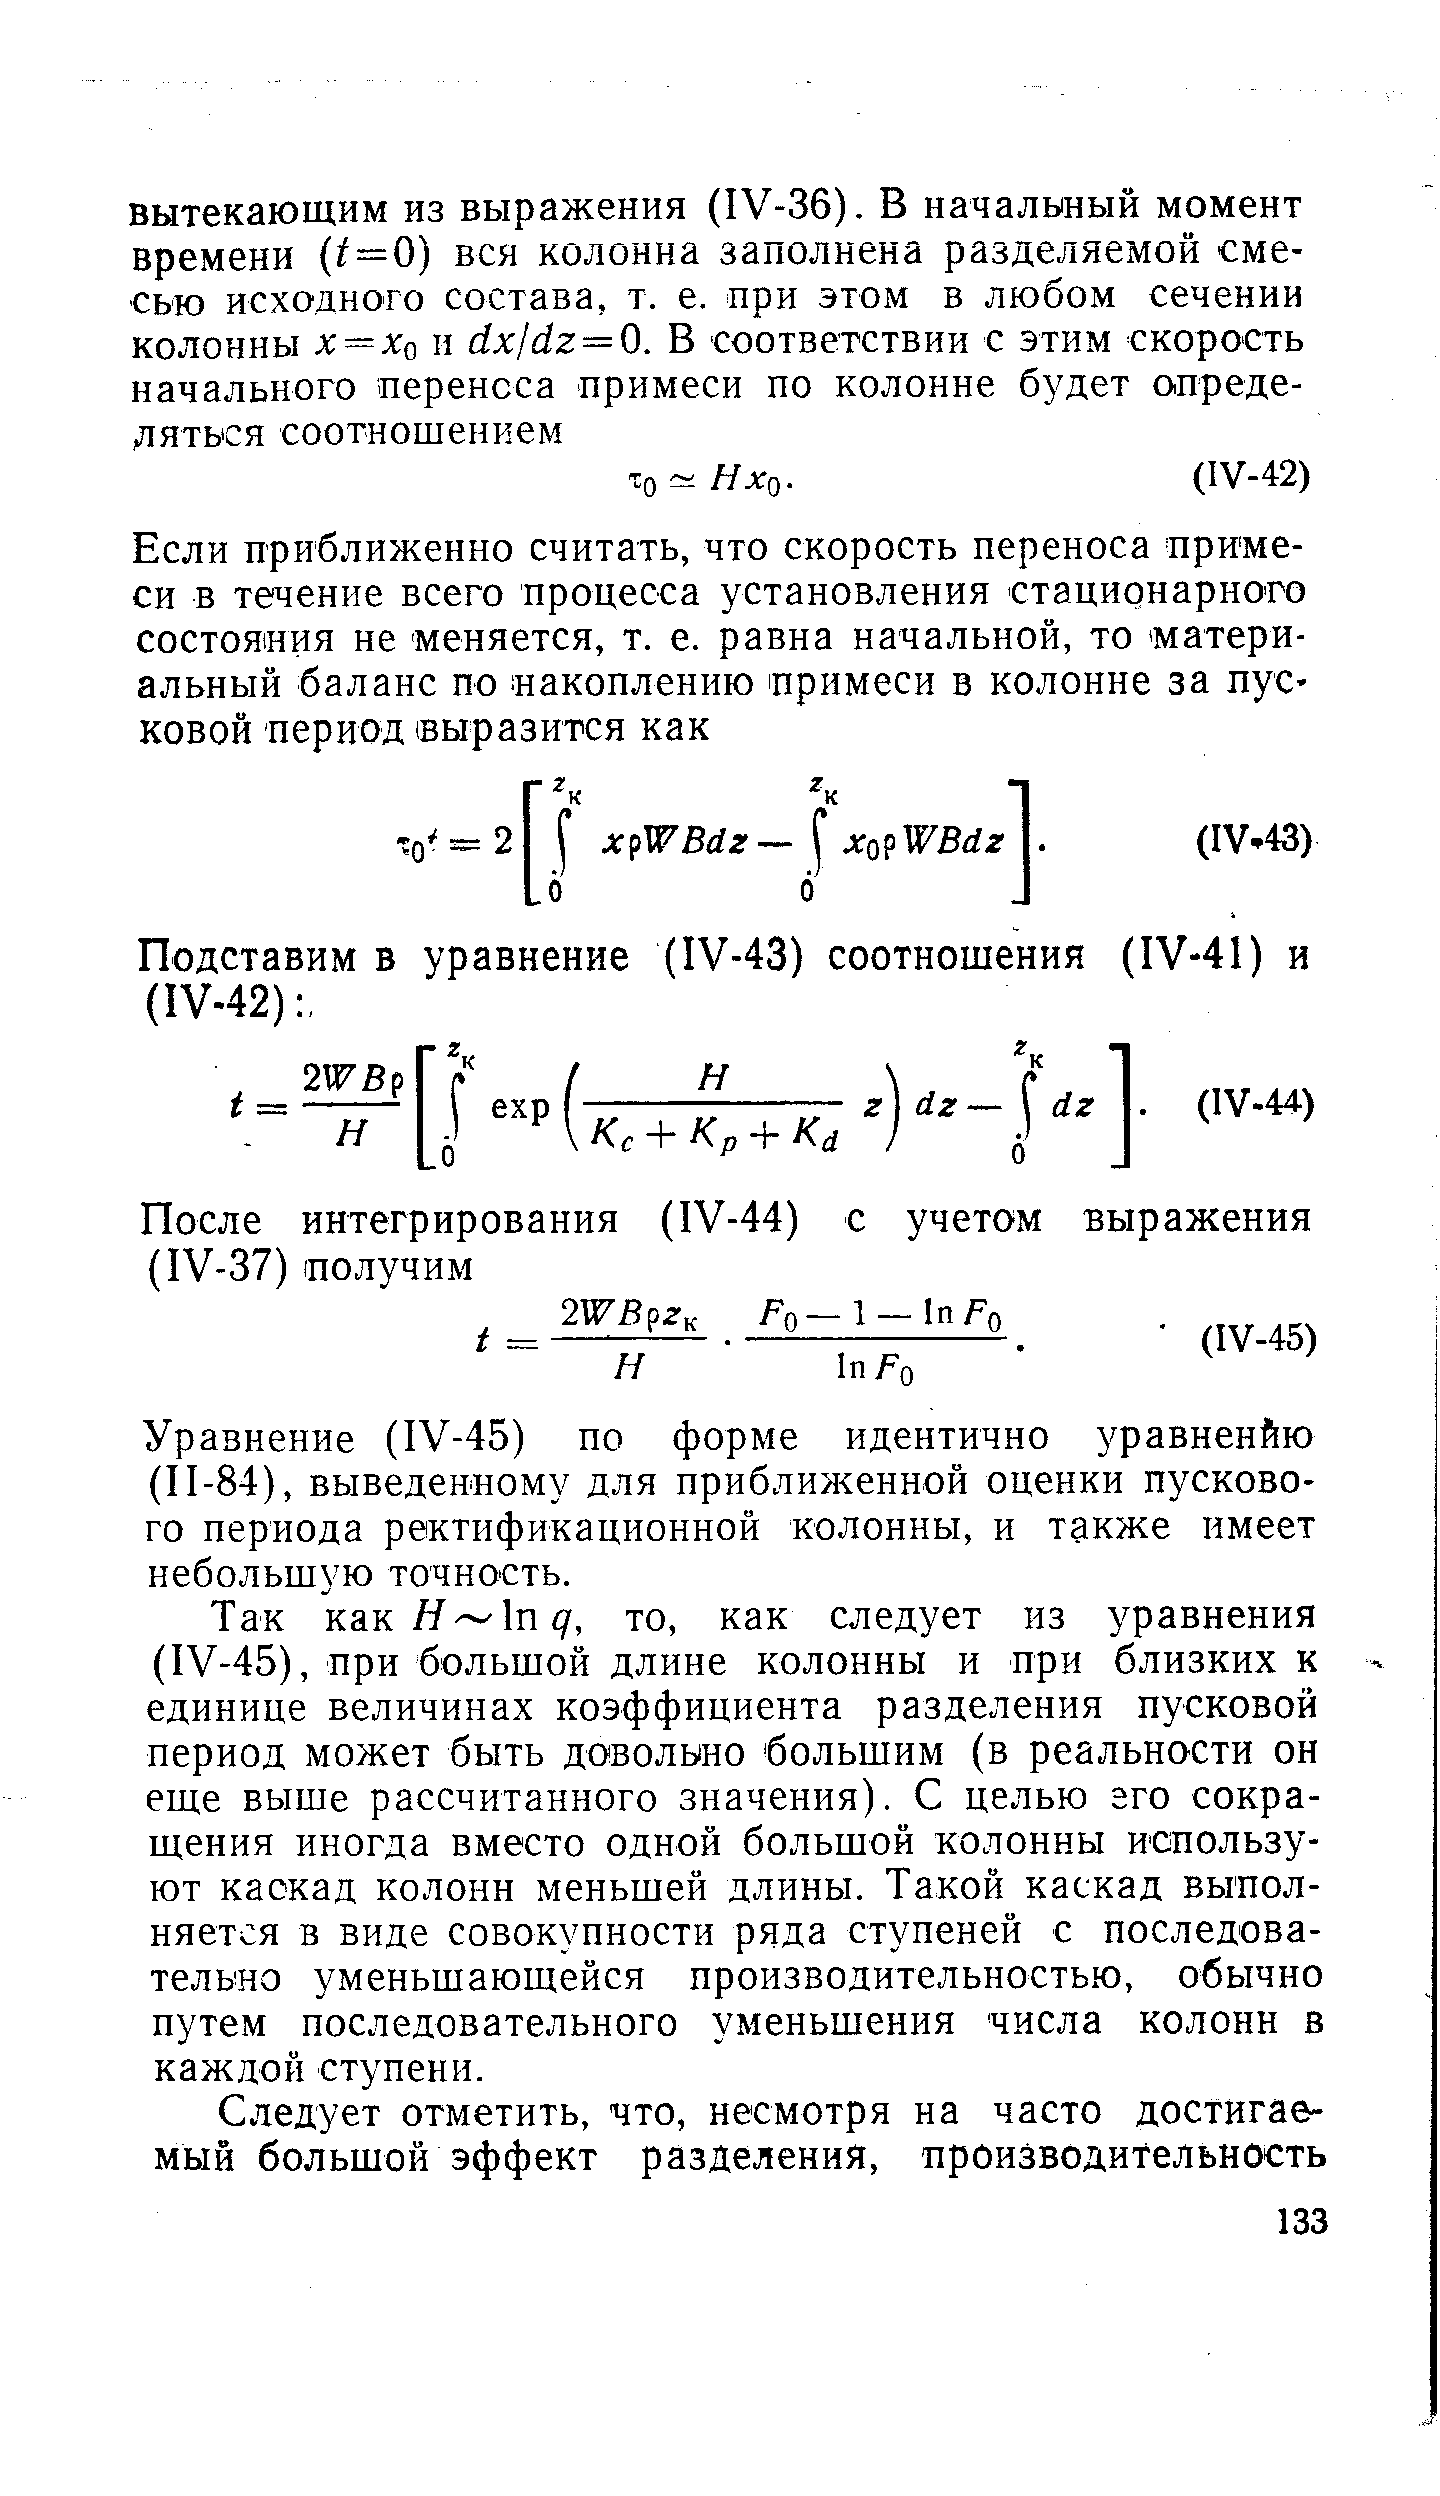 Уравнение (1У-45) по форме идентично уравненйю (П-84), выведенному для приближенной оценки пускового периода ректификационной колонны, и также имеет небольшую точность.